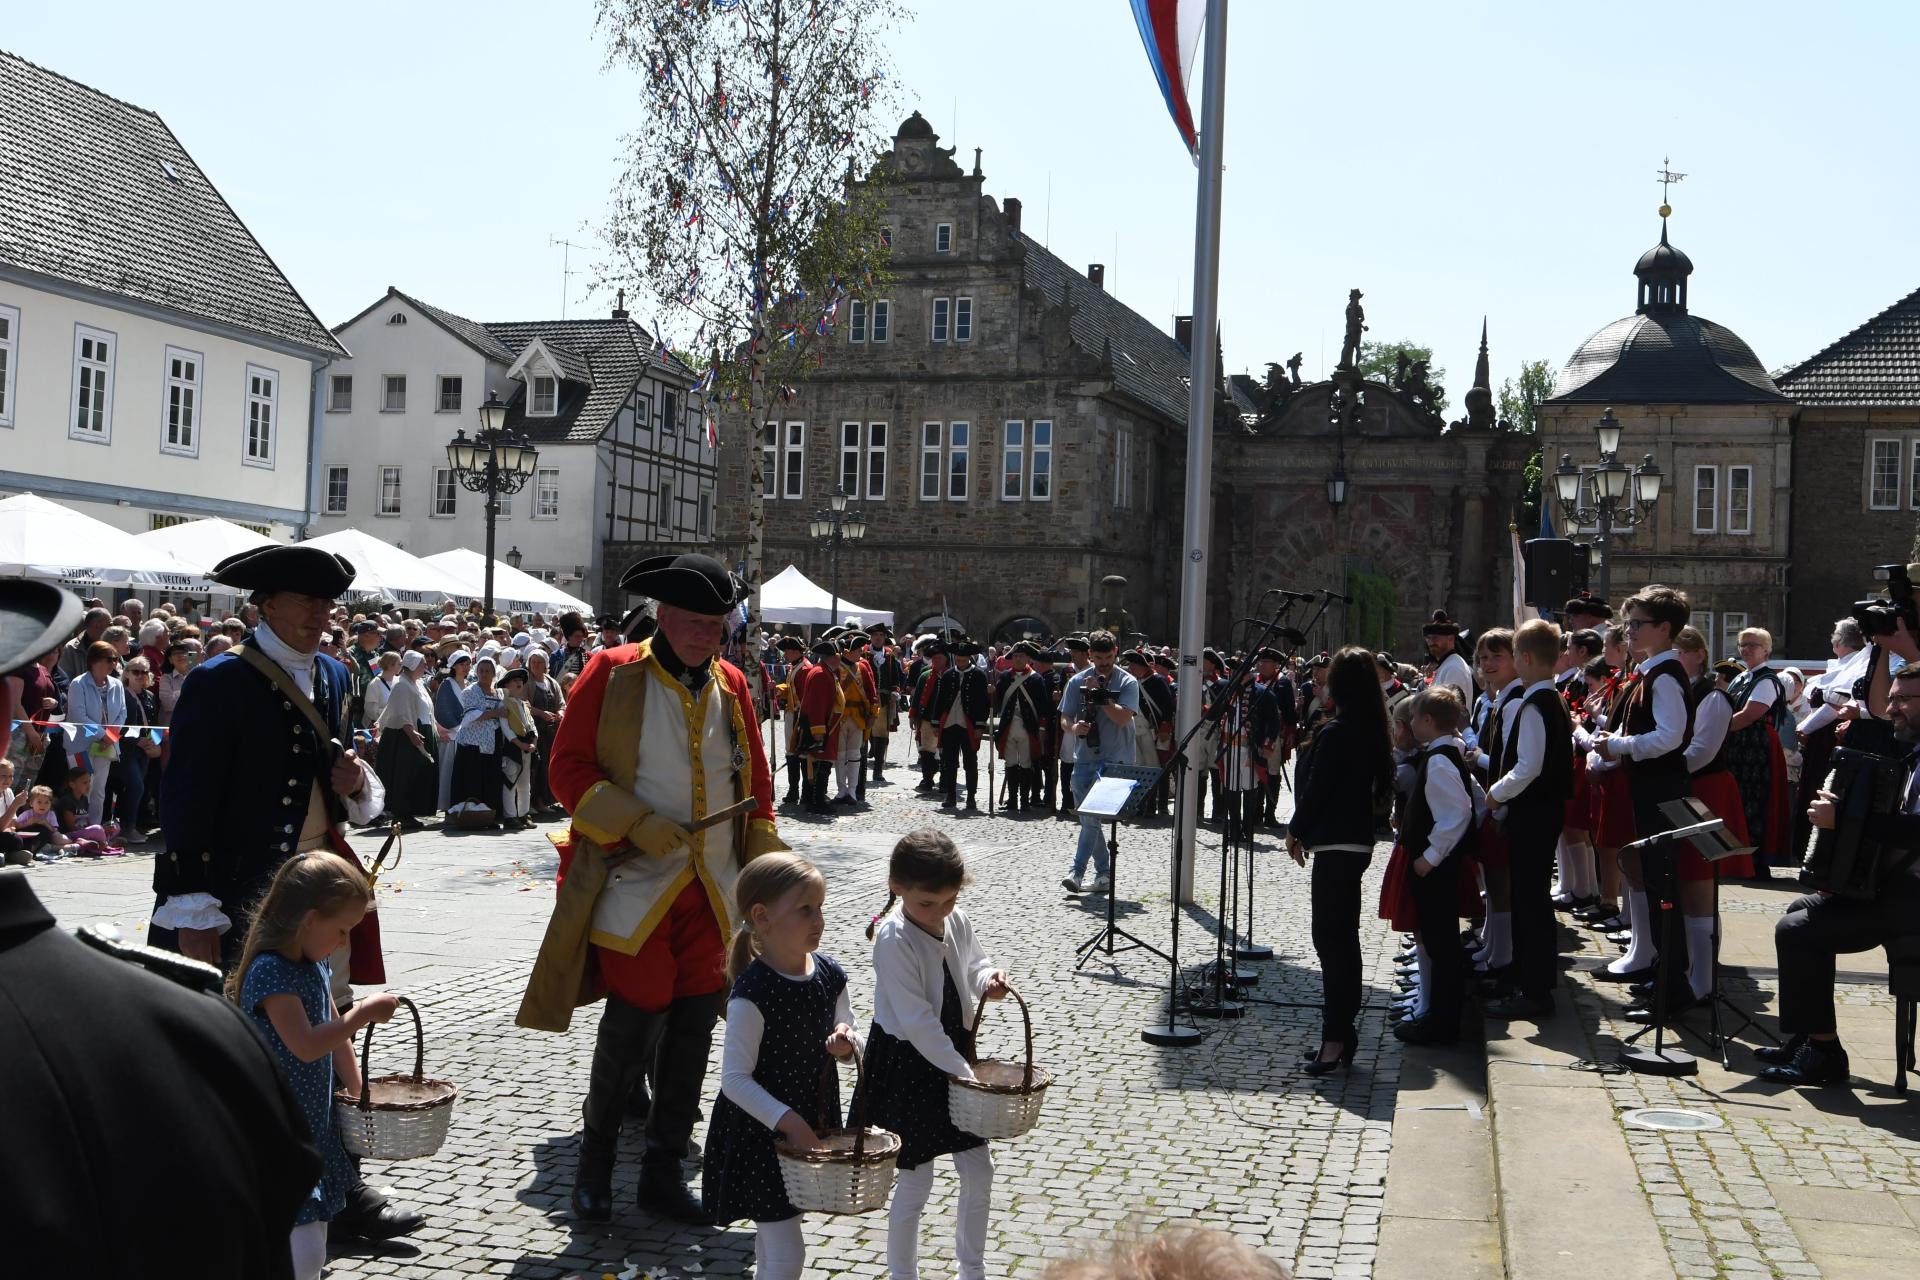 Die Stadt Bückeburg empfängt zum 300sten Geburtstag von Graf Wilhelm zu Schaumburg-Lippe ihren „Landesherren” mir einer großen Aktion in der Innenstadt. (Foto: nd)